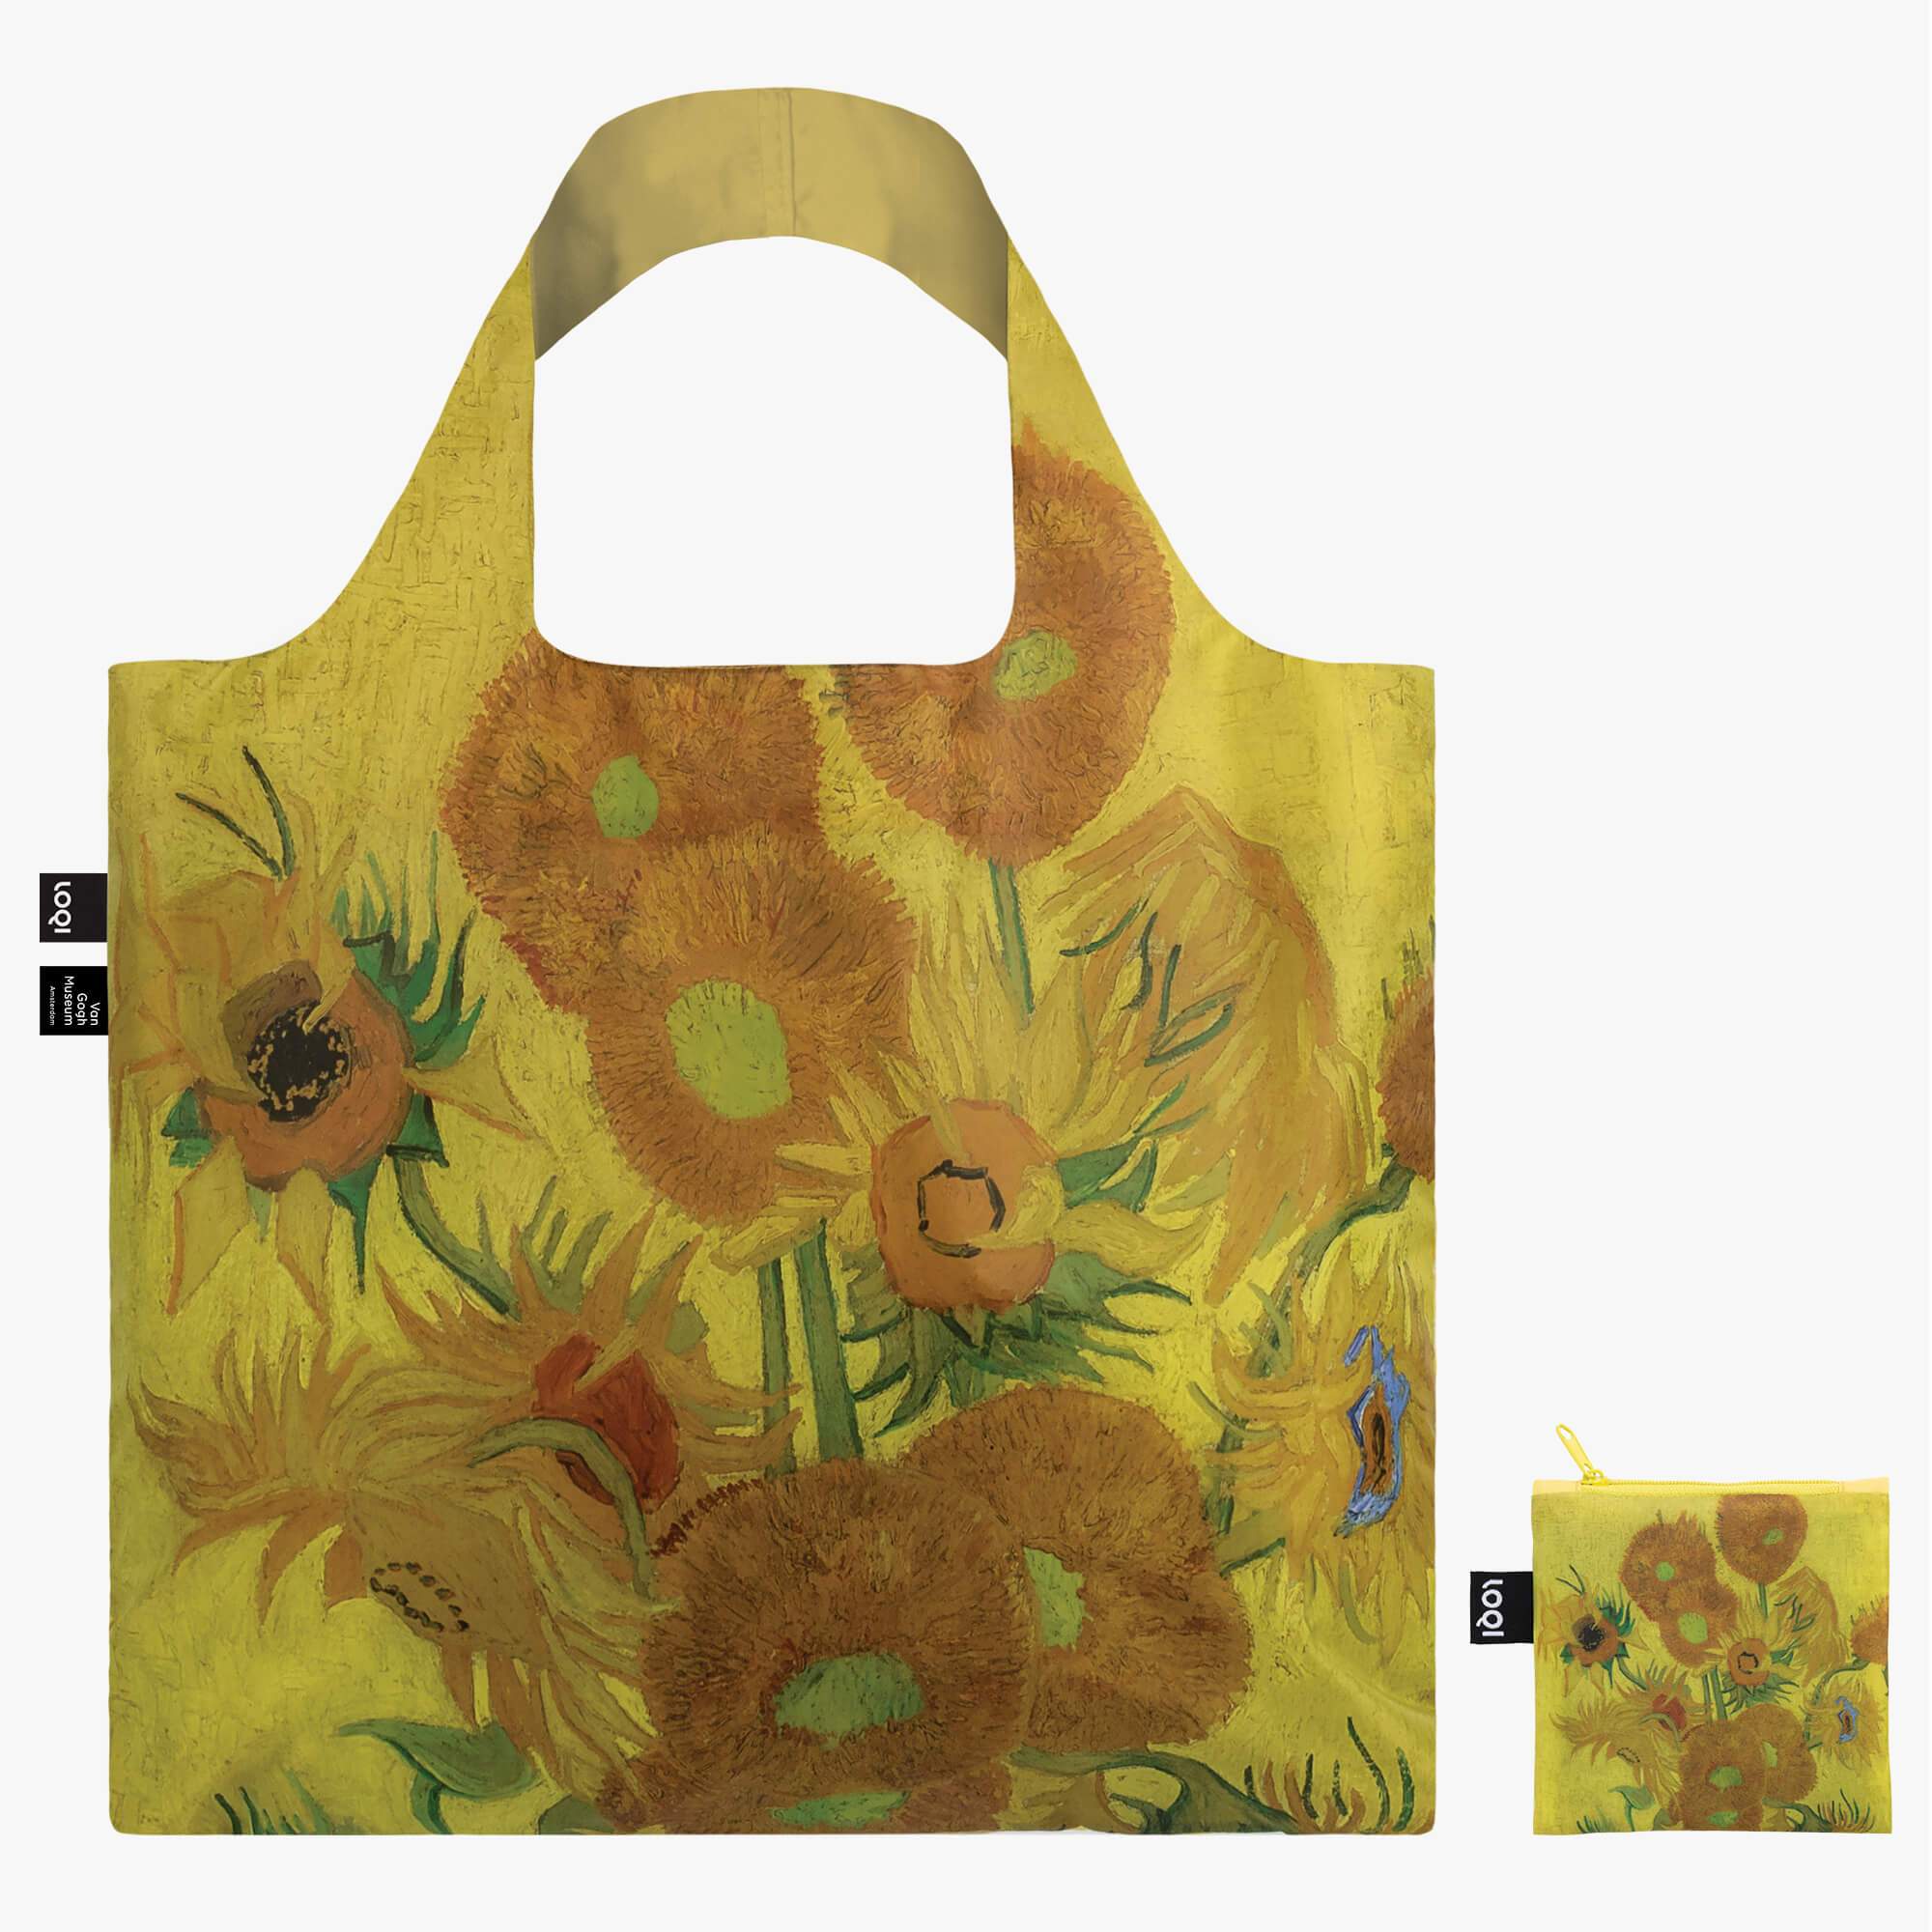 Van Gogh Tote Bag, Vincent Van Gogh Tote Bag, Aesthetic Tote Bag